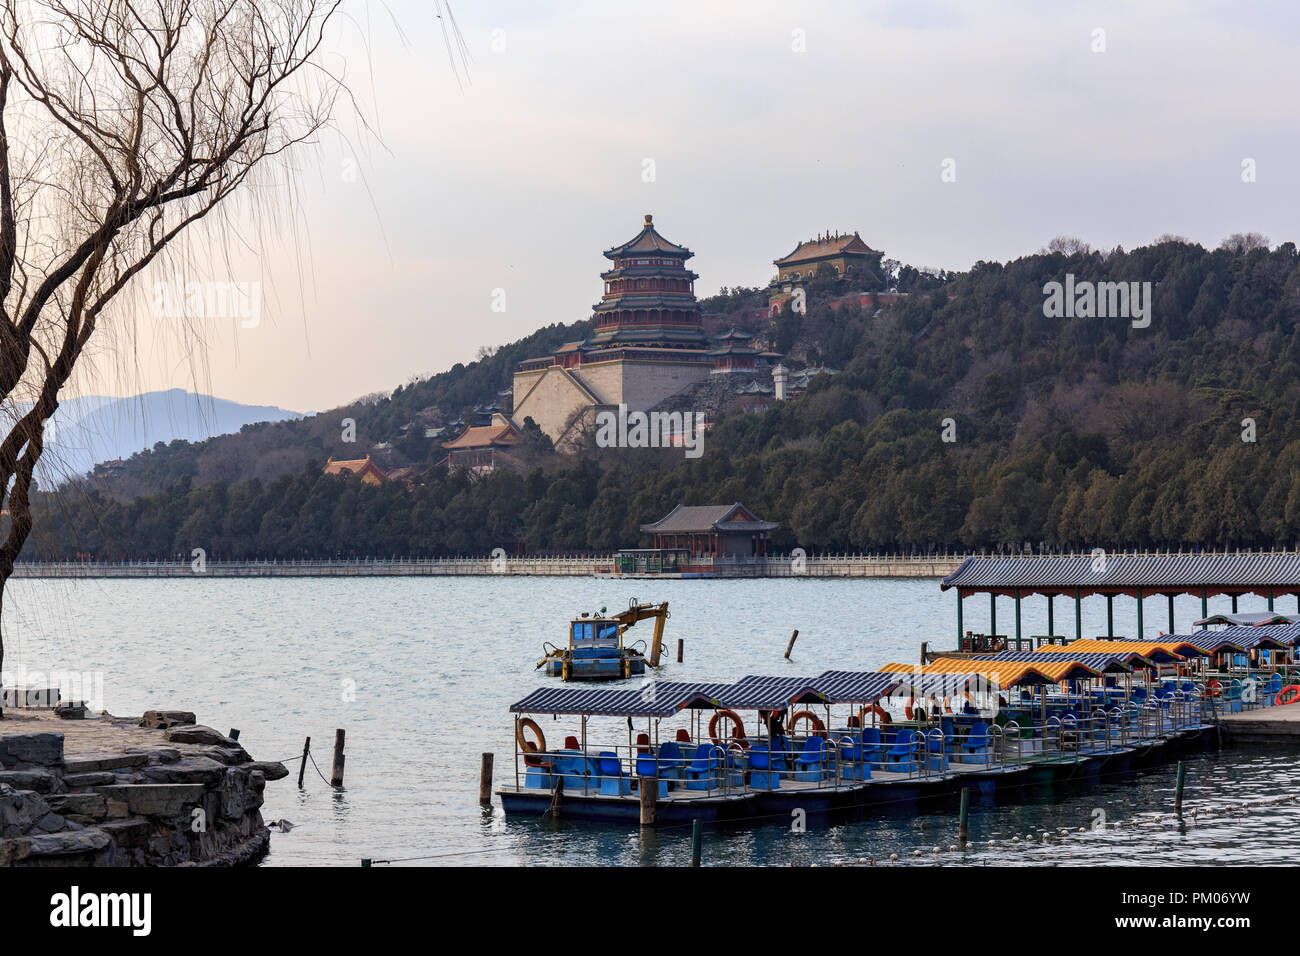 Turm der Buddhistischen Düfte und andere Tempel Vergangenheit Boote über den See im Sommerpalast, Peking, China gesehen. Stockfoto